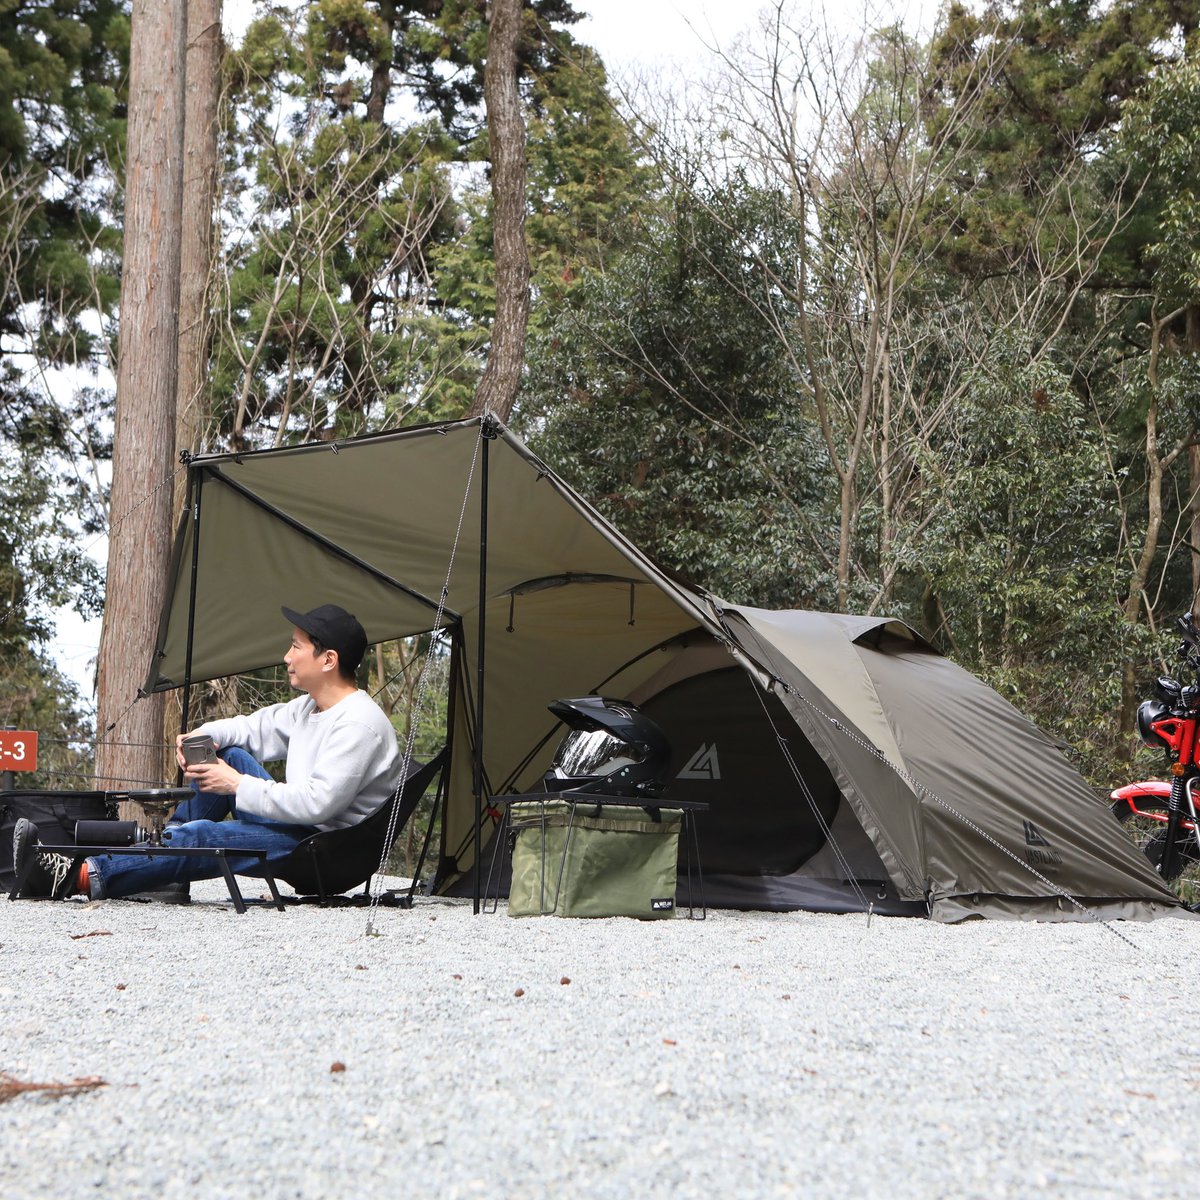 🗓5/18(土)&19(日) 開催🎉
#アウトドアパーク 出展ブランド(111)

【VASTLAND】
outdoorpark.jp/booth/vastland…

#VASTLAND
#ヴァストランド
#OUTDOORPARK2024
#OUTDOORPARK
#アウトドアパーク
#OUTDOOR
#アウトドア
#キャンプ
#camp
#キャンプ用品
#キャンプギア
#campinggear
#テント